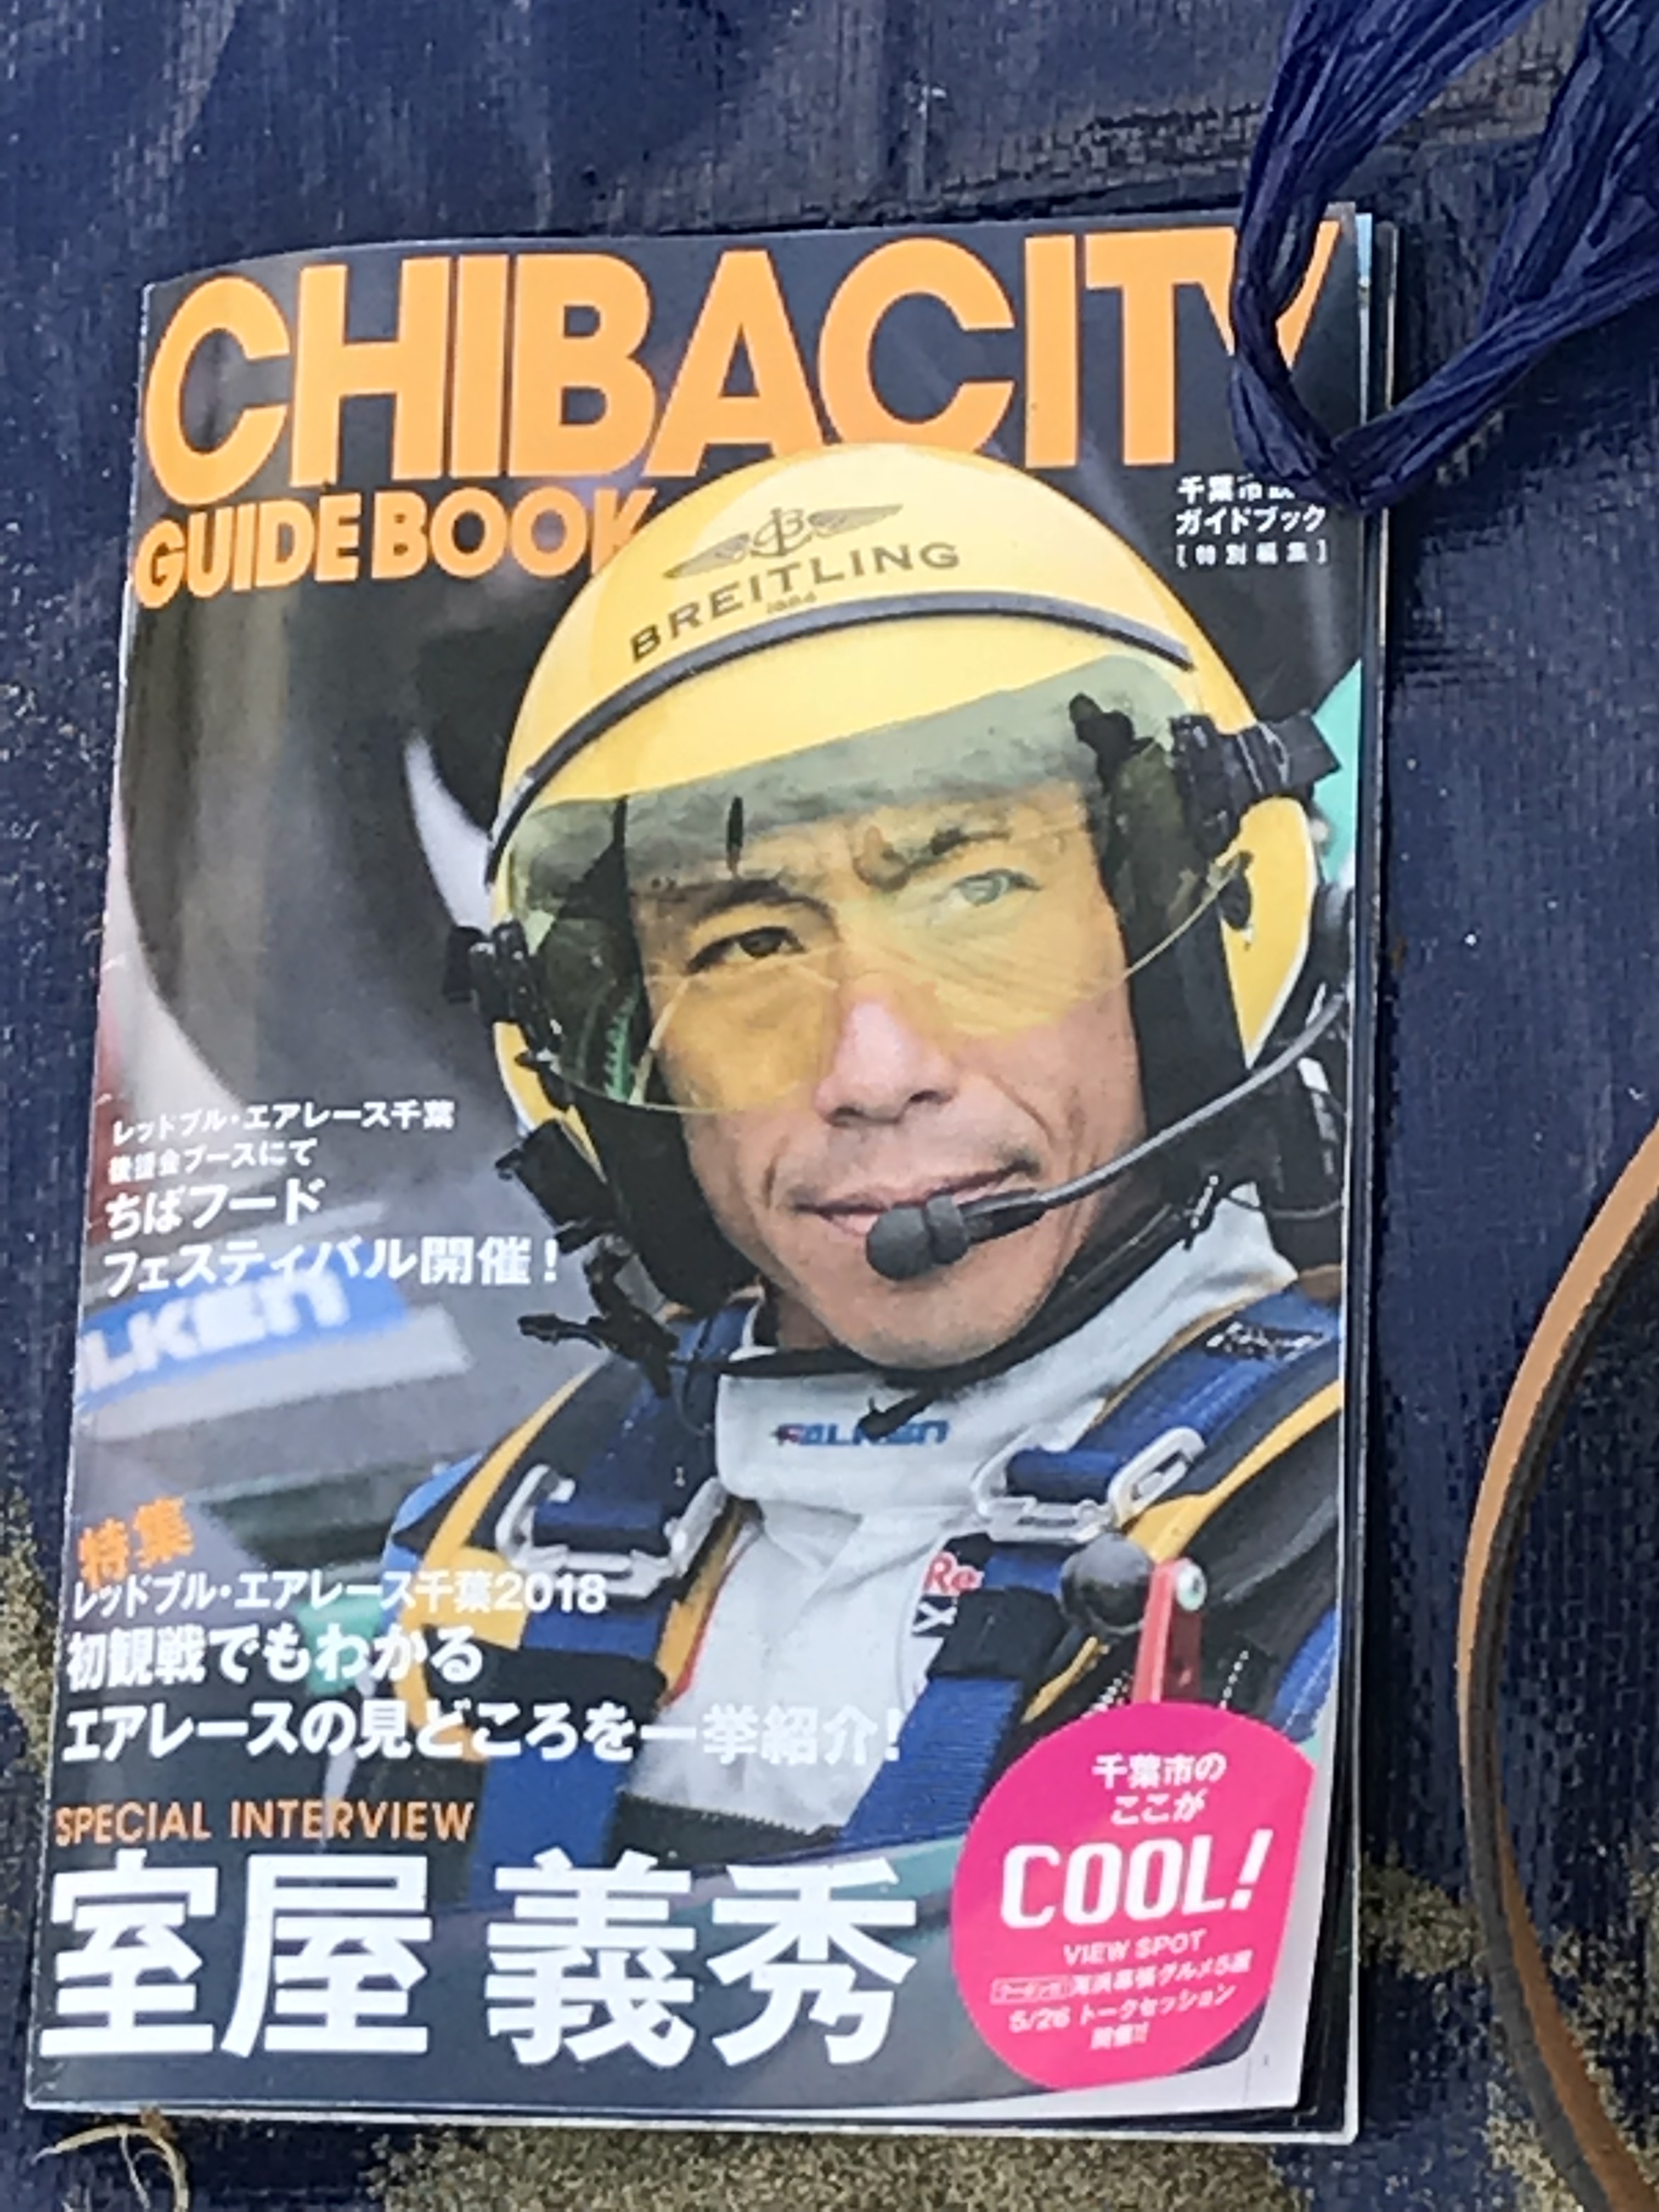 【2019年9月7・8日開催決定】Red bull Air Race レッドブルエアレース 飛行機レースが日本で観られる。日本人参加選手は？過去のレース結果、室屋選手の生い立ちは？@千葉